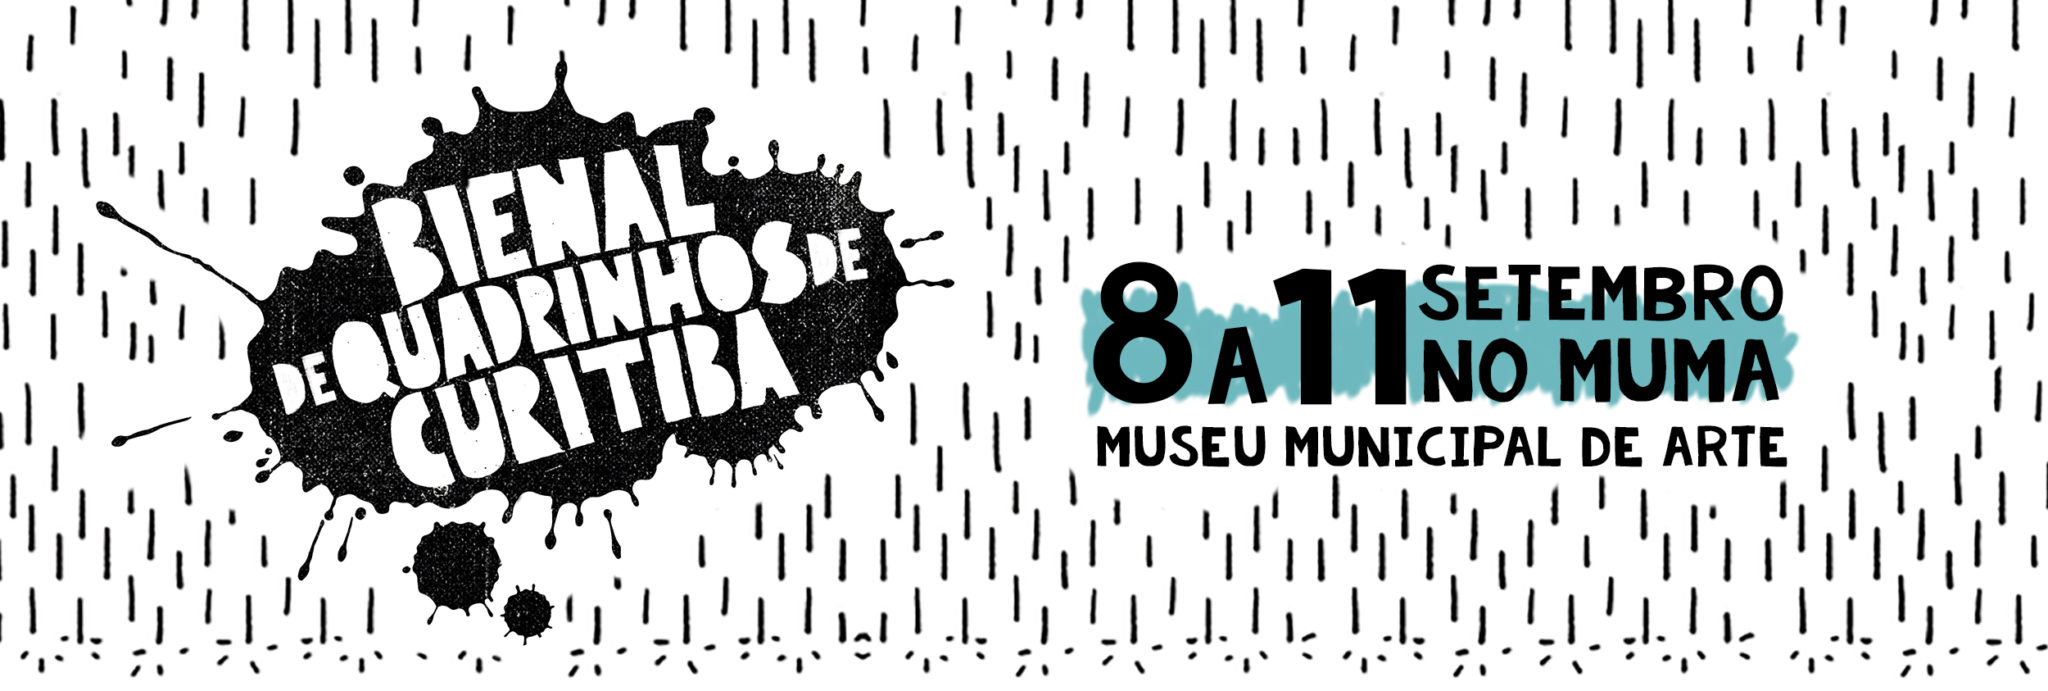 Já viu a programação de palestras, debates  e oficinas da Bienal de Quadrinhos de Curitiba?